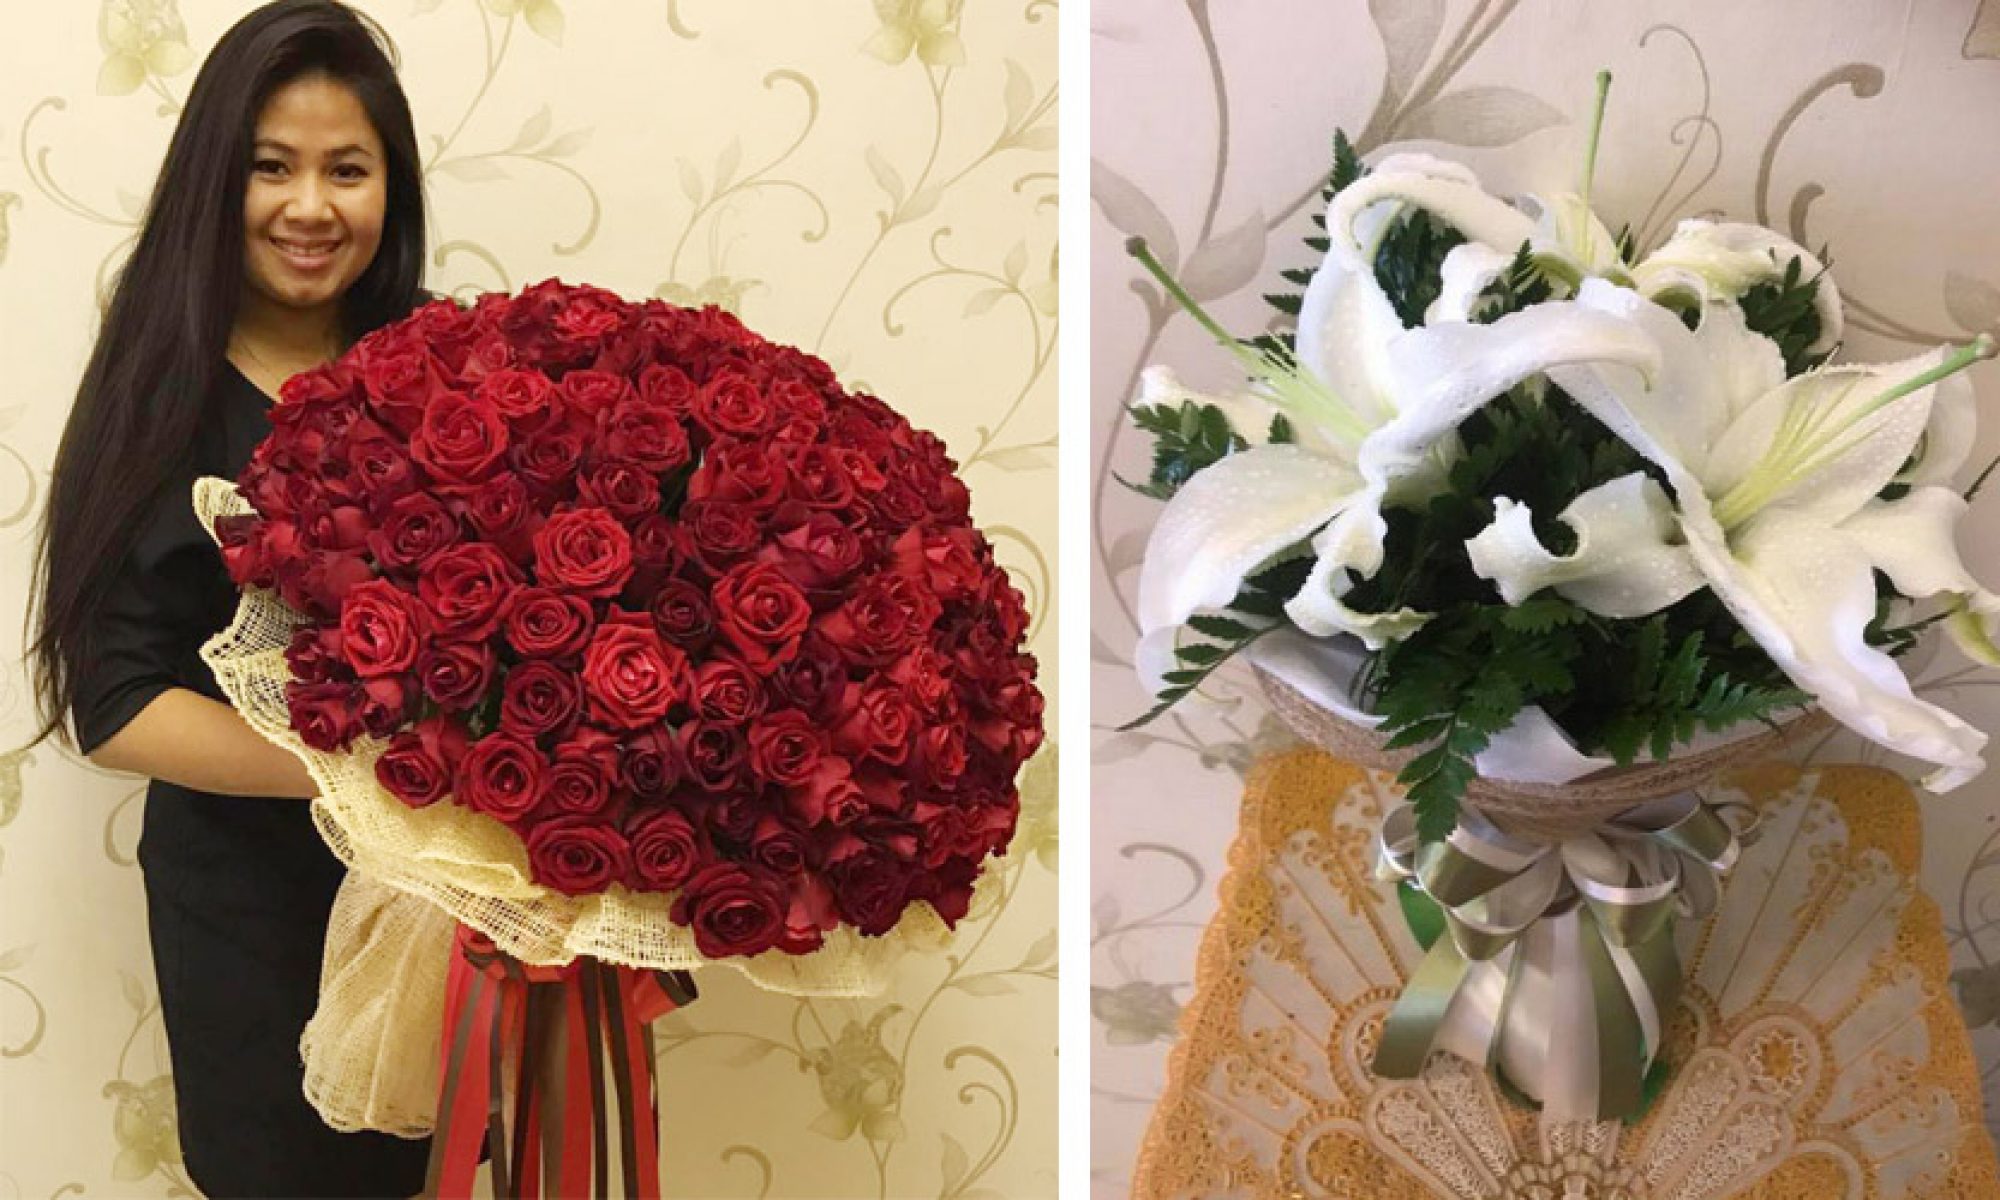 ร้านดอกไม้ลพบุรี 086-7717575 (นิว) ส่งดอกไม้ บริการช่อดอกไม้ พวงหรีด ลพบุรี